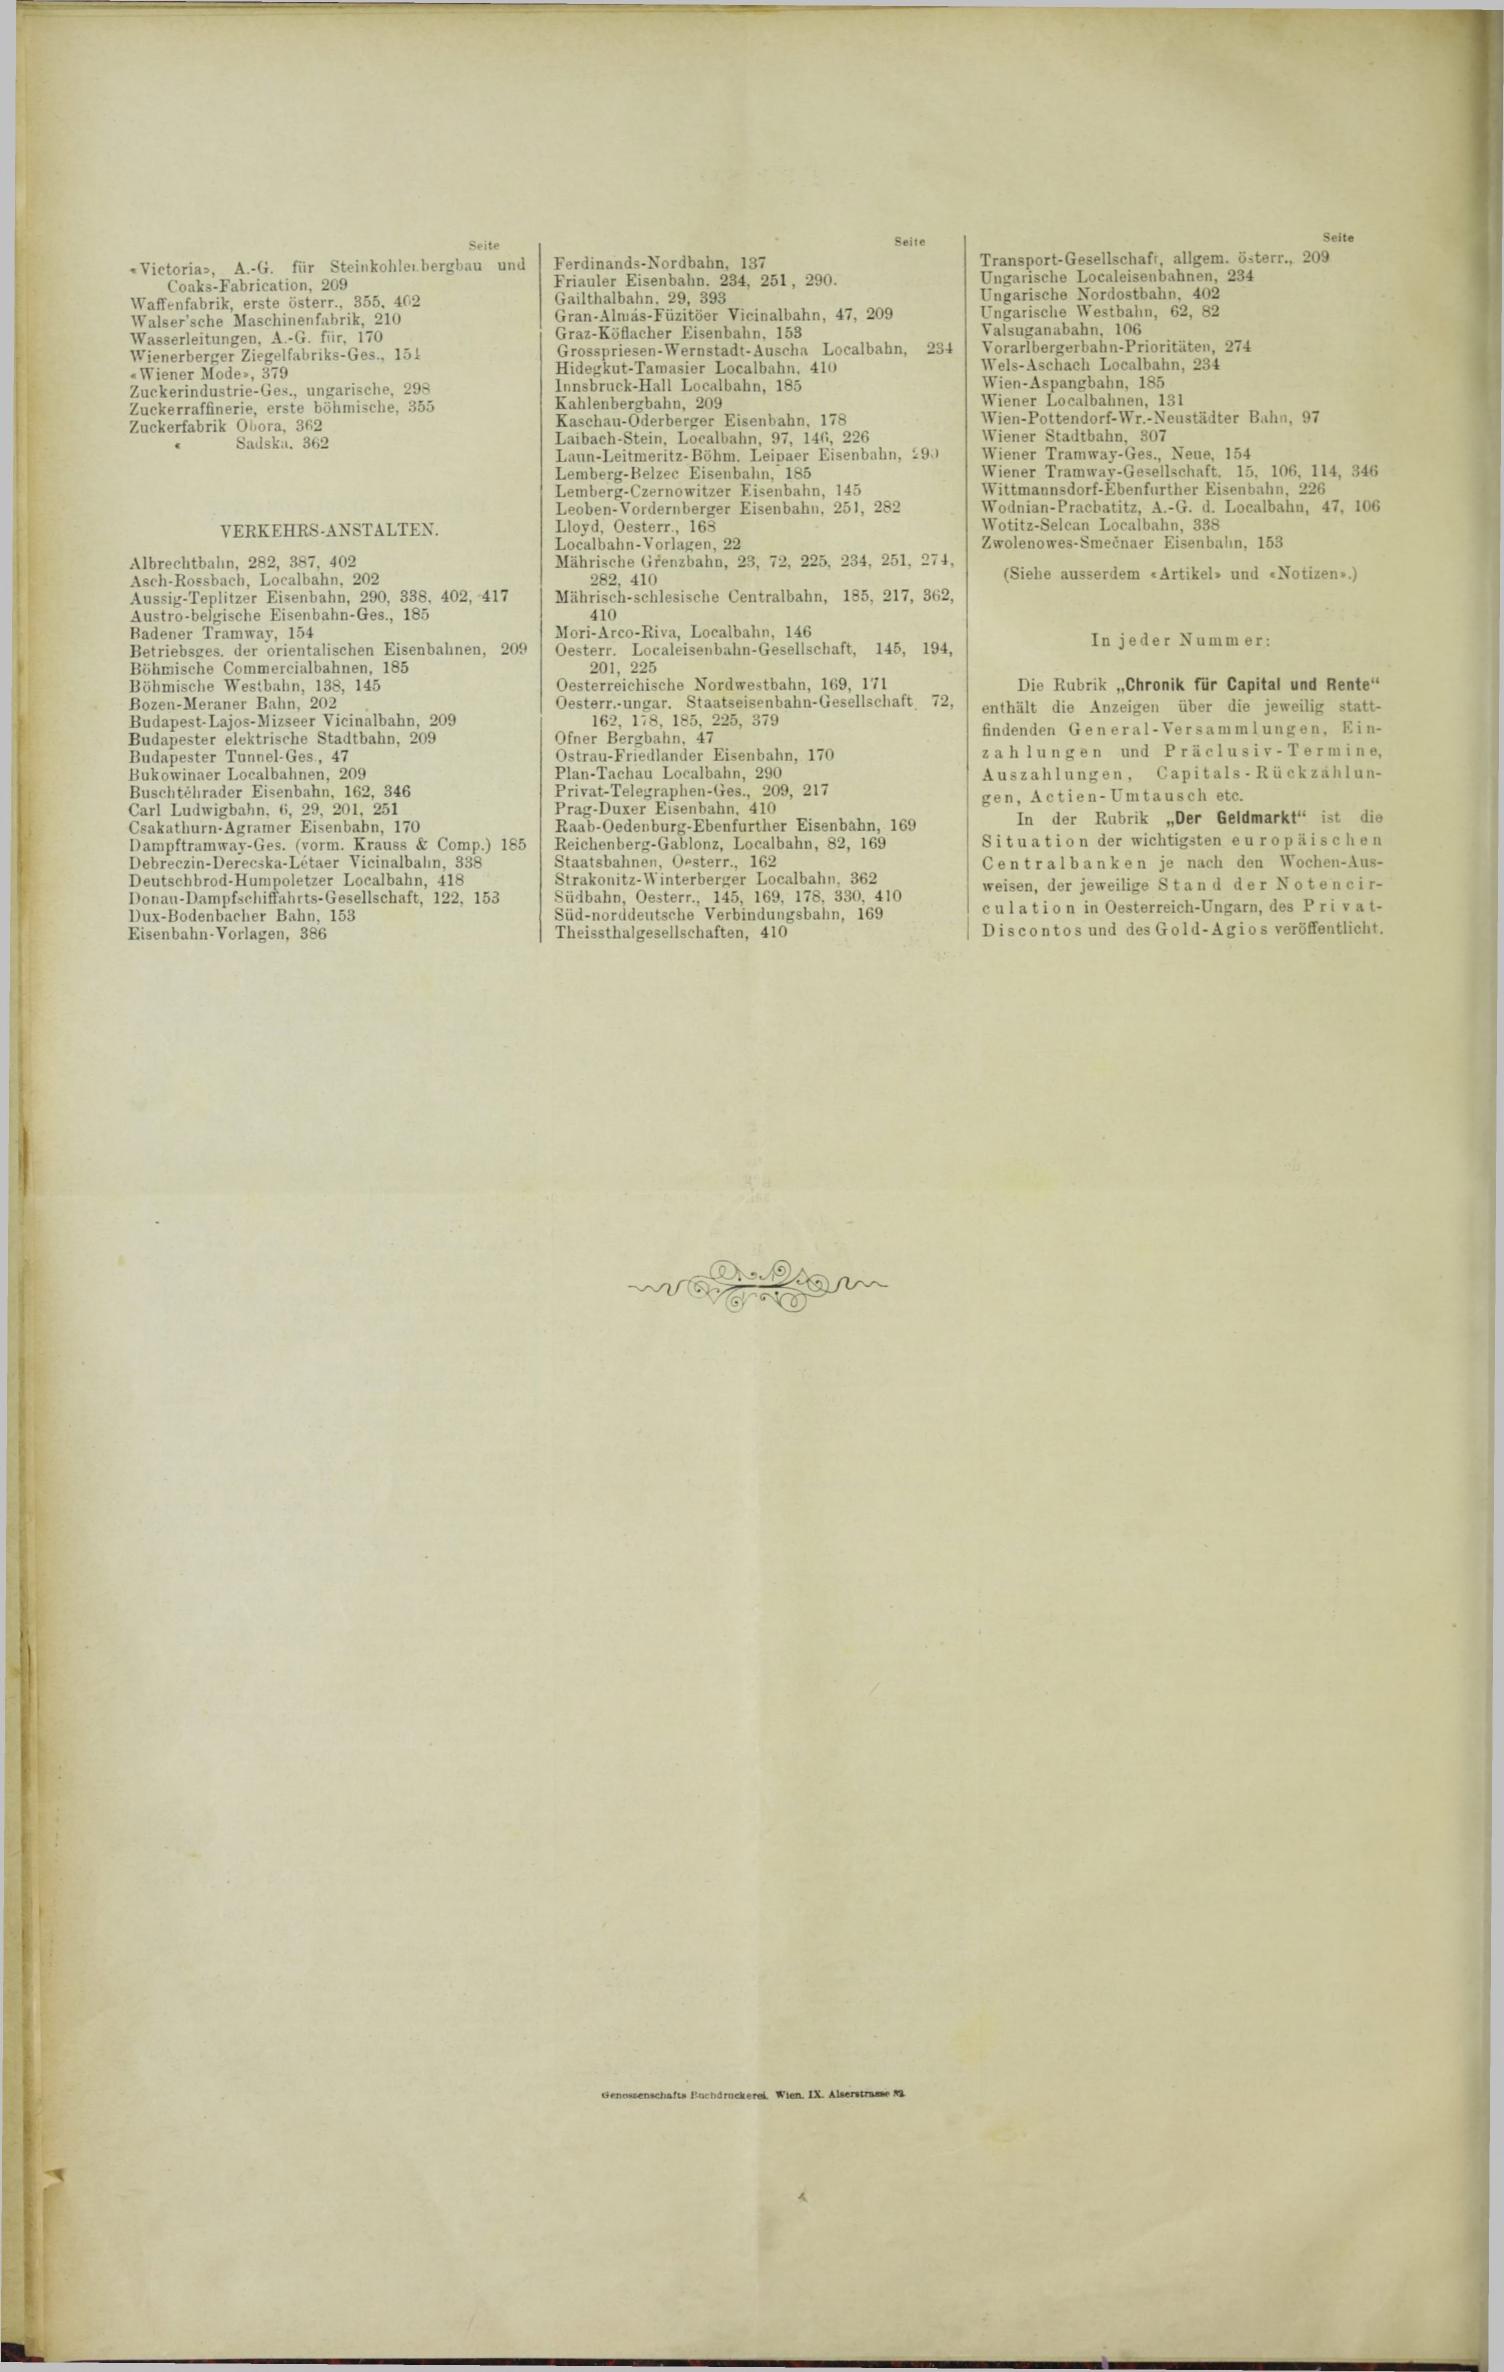 Der Tresor 23.03.1893 - Seite 12